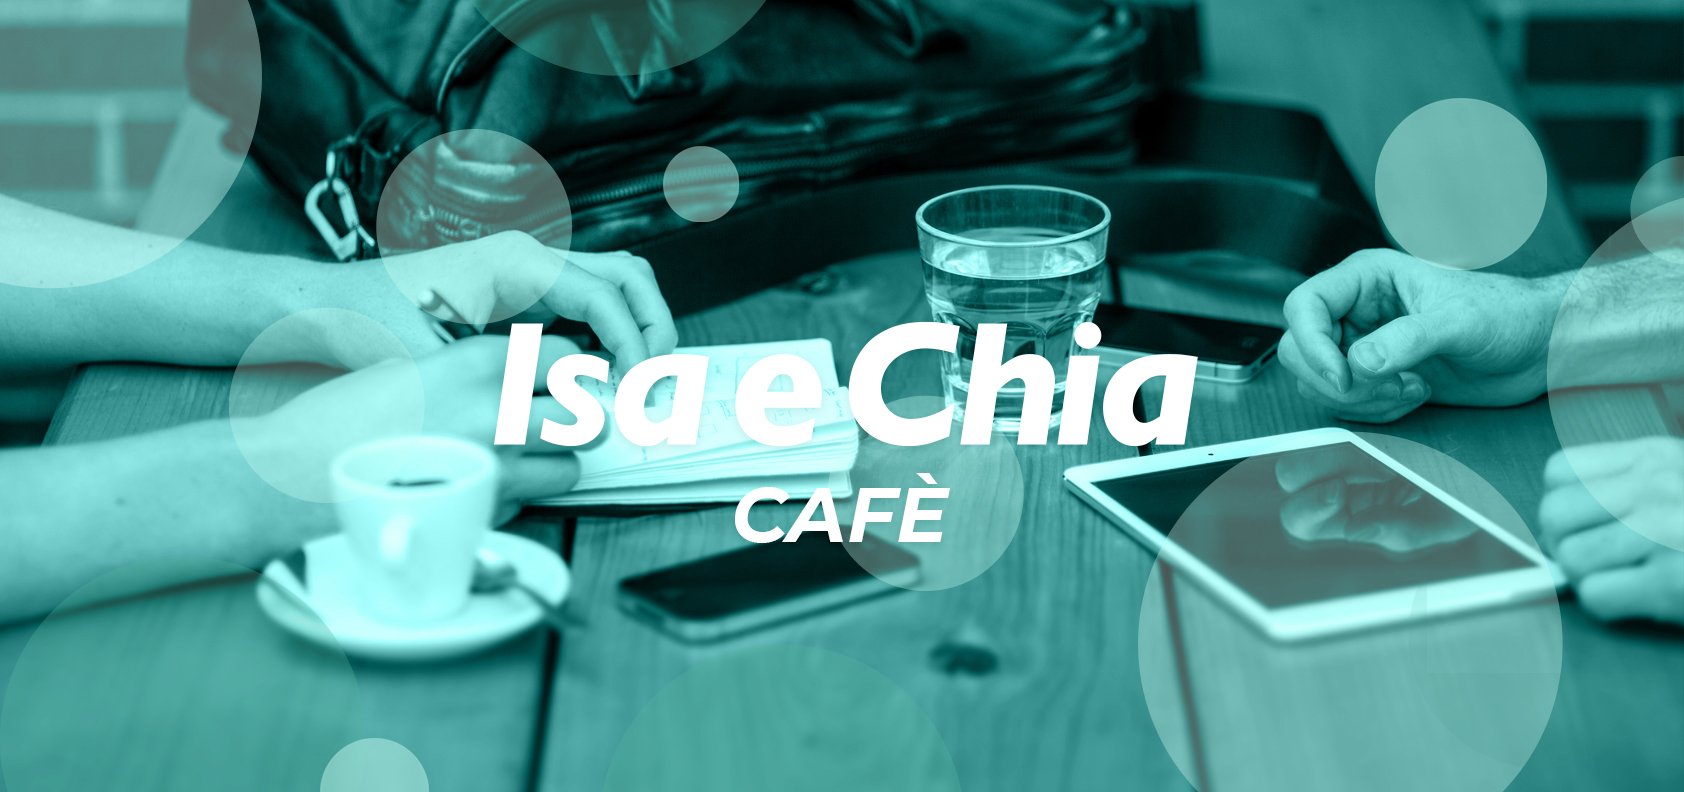 Isa e Chia Cafè, l’angolo delle chiacchiere in libertà (31/08/22)